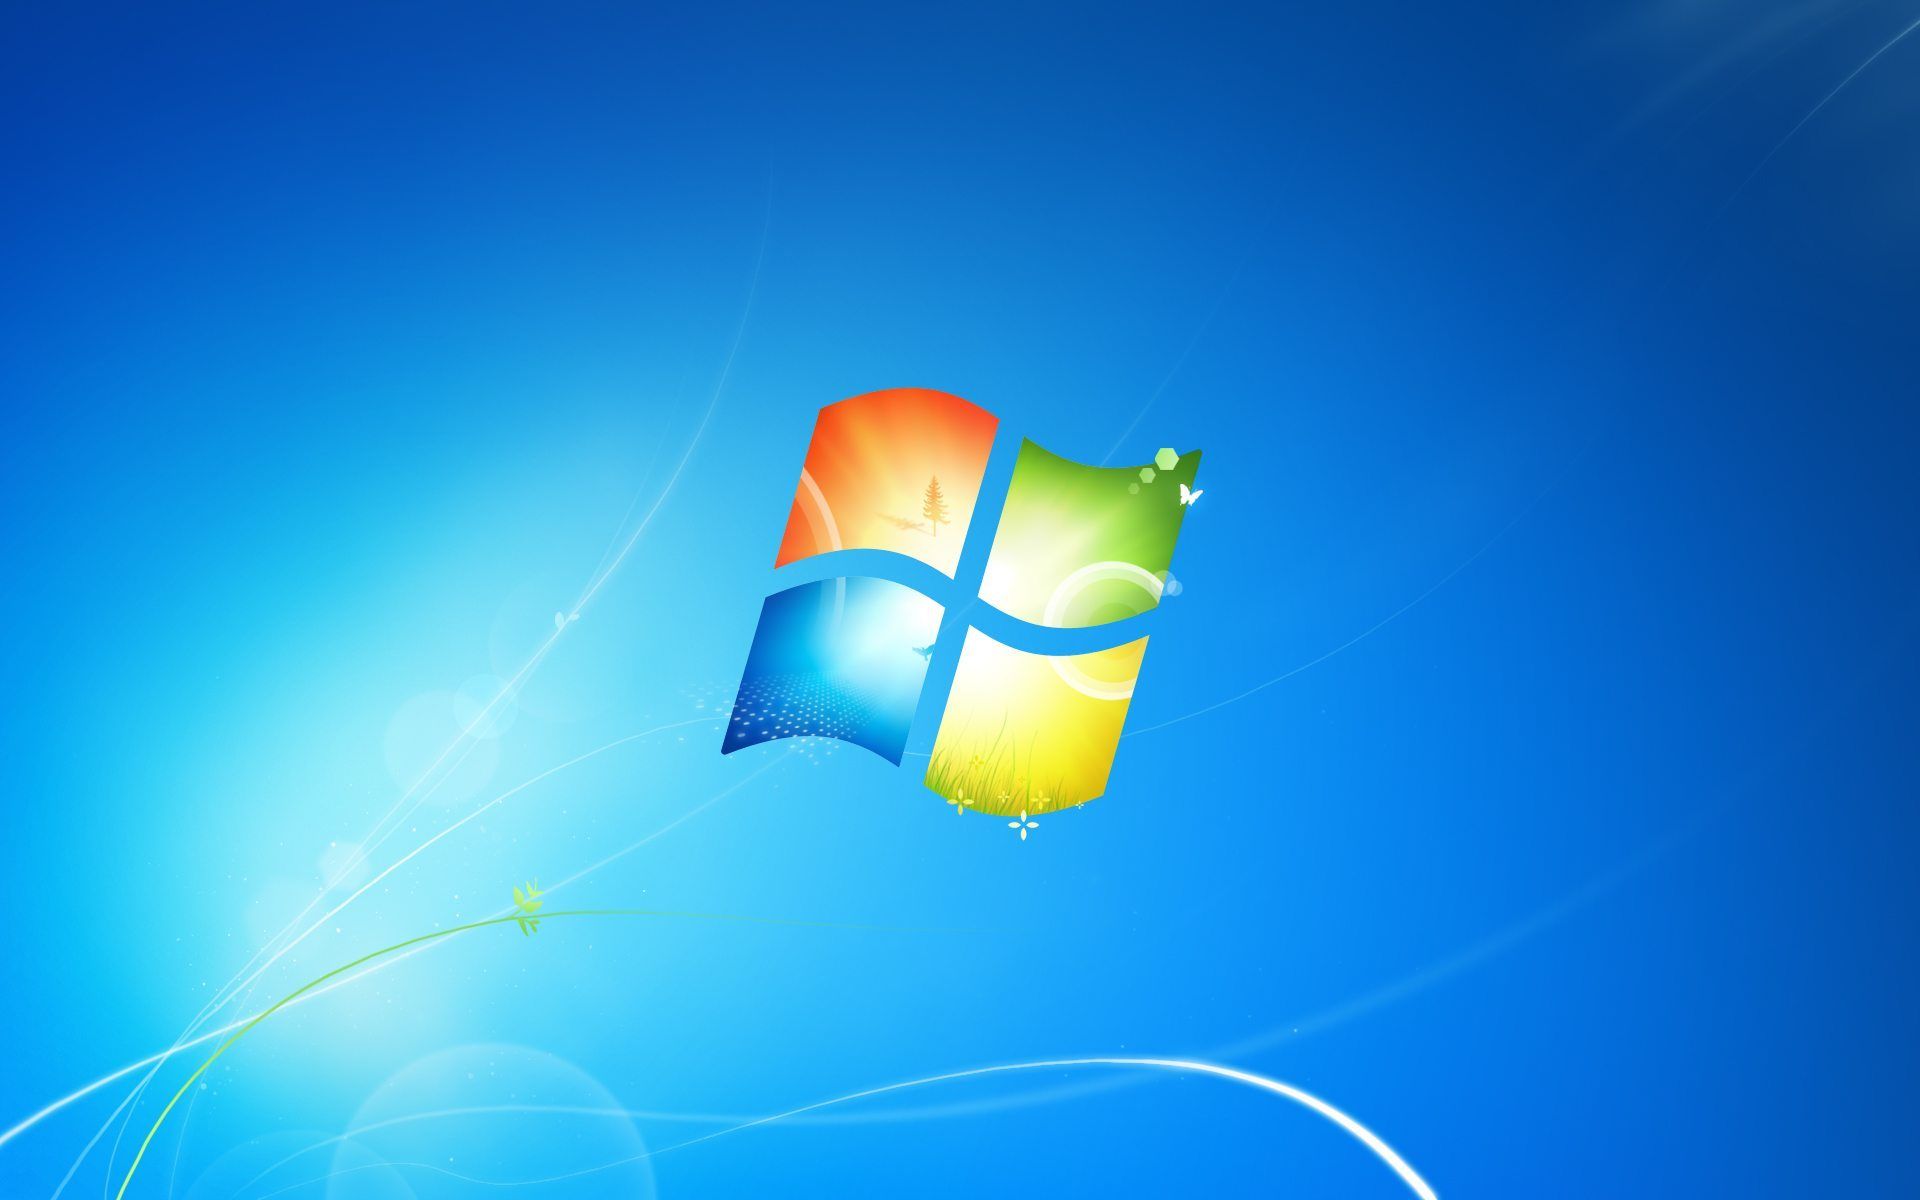 Fondos de pantalla oficiales de Windows 7 - WPArena